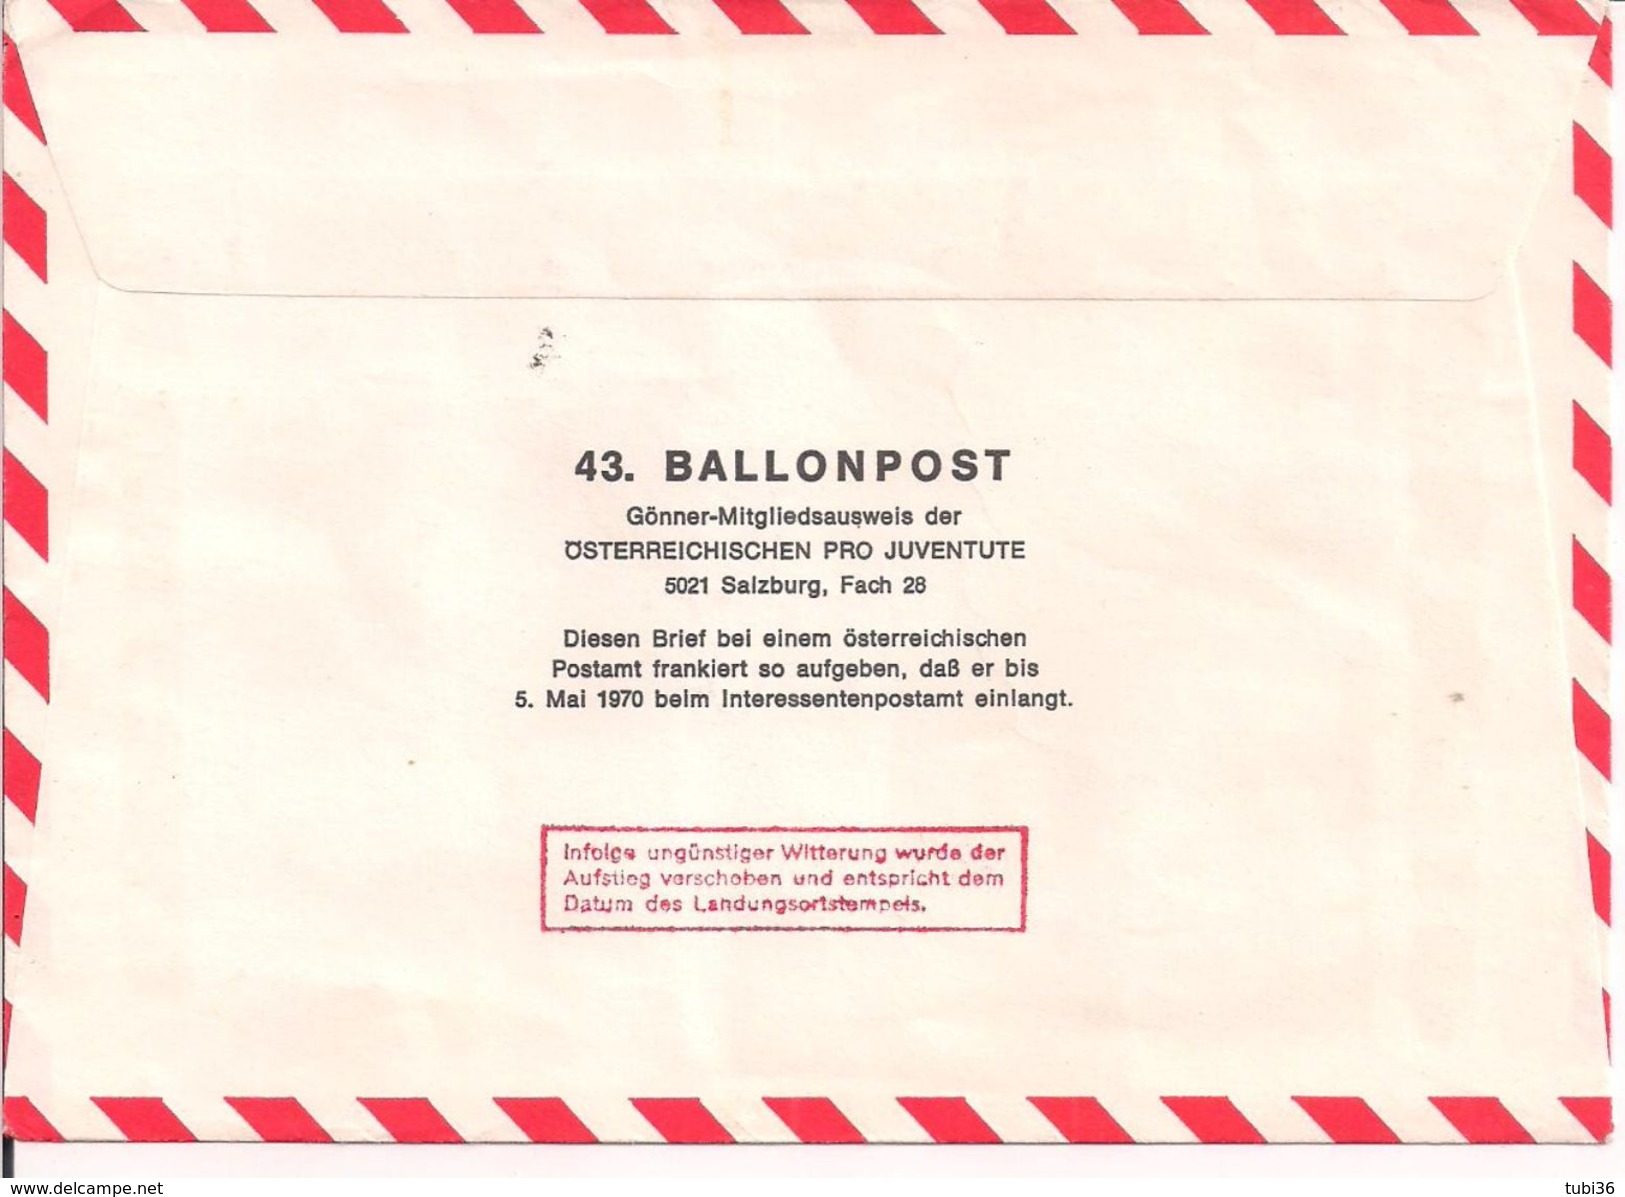 Austria - MIT  Ballonpost 43 Zweite Republik 25 Jahre 10.05.1970 / -0 - Par Ballon